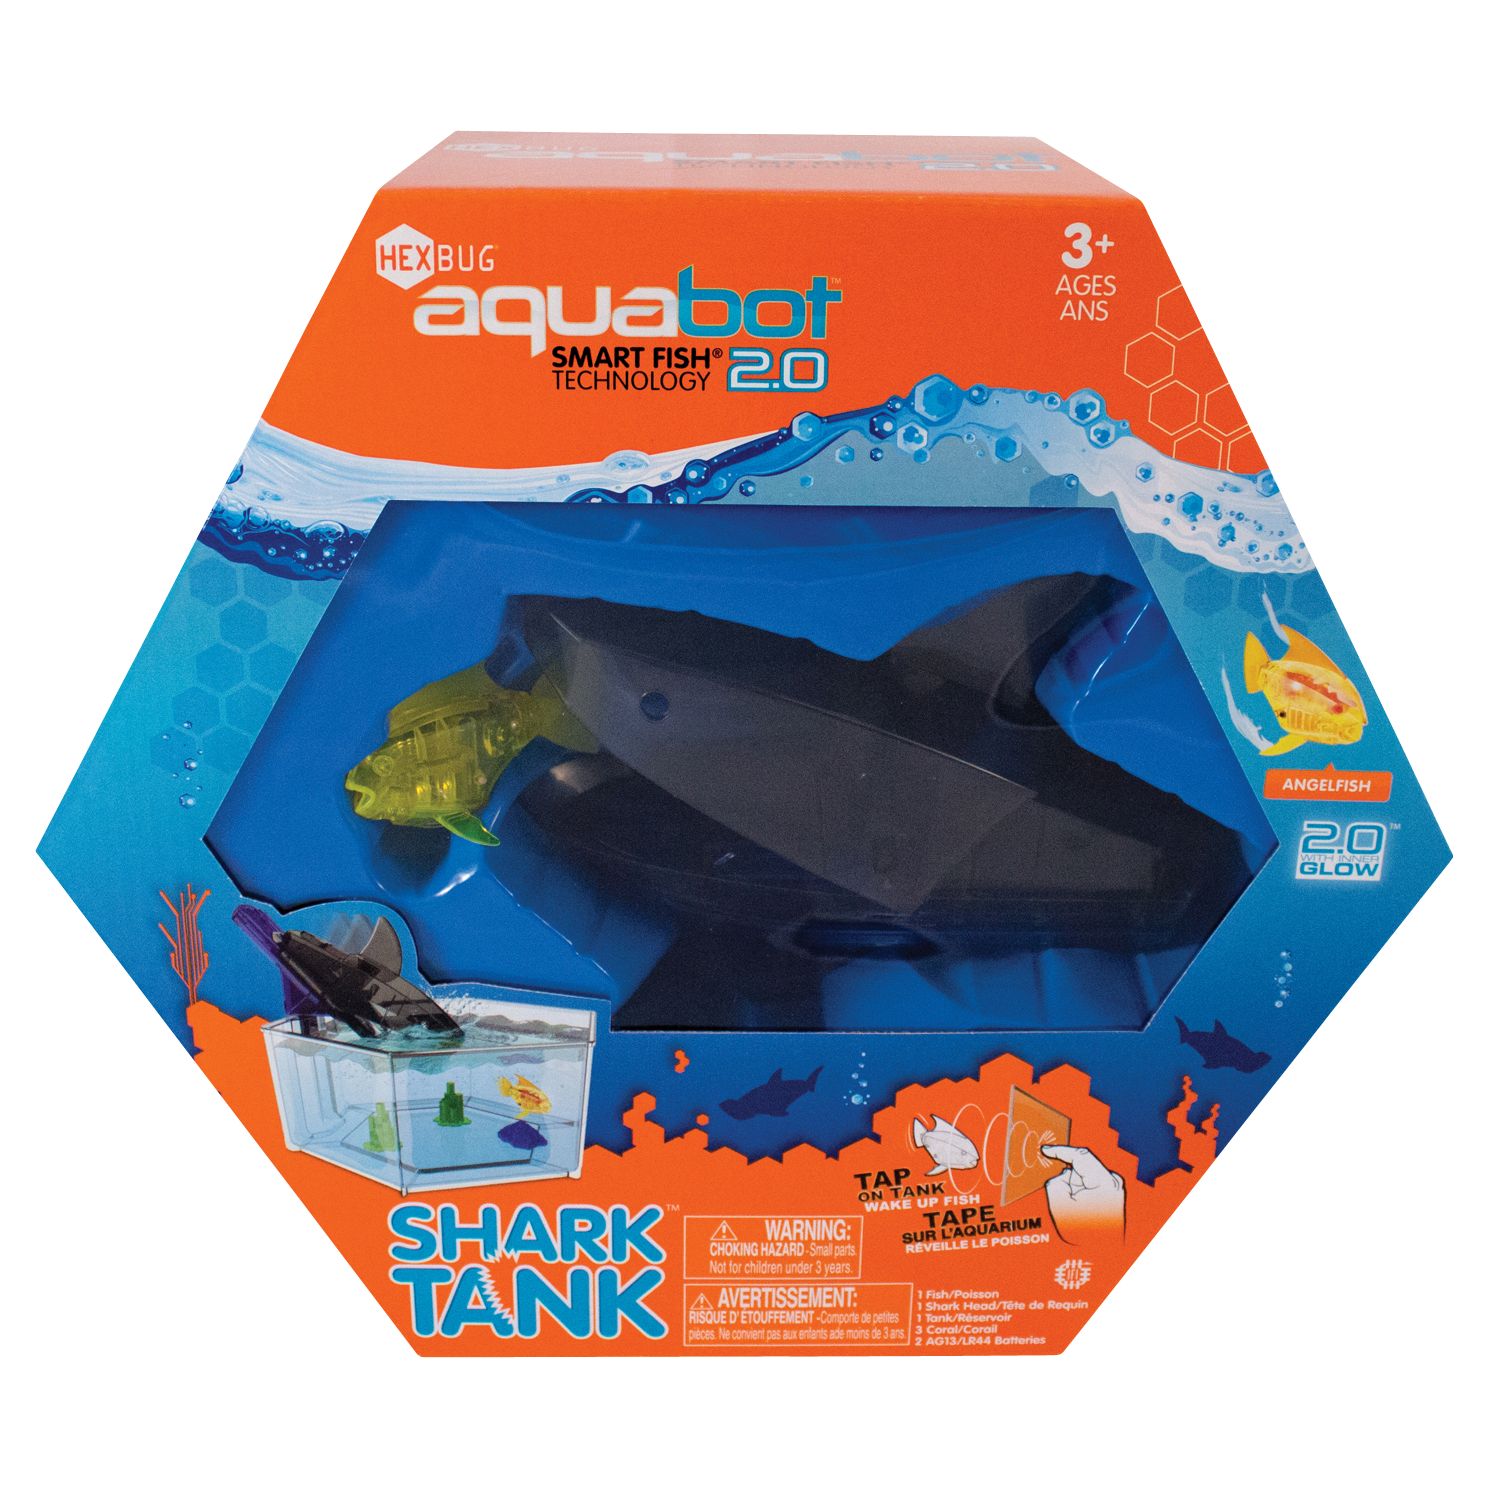 Hexbug Aquabot 2.0 Shark Tank Aquarium